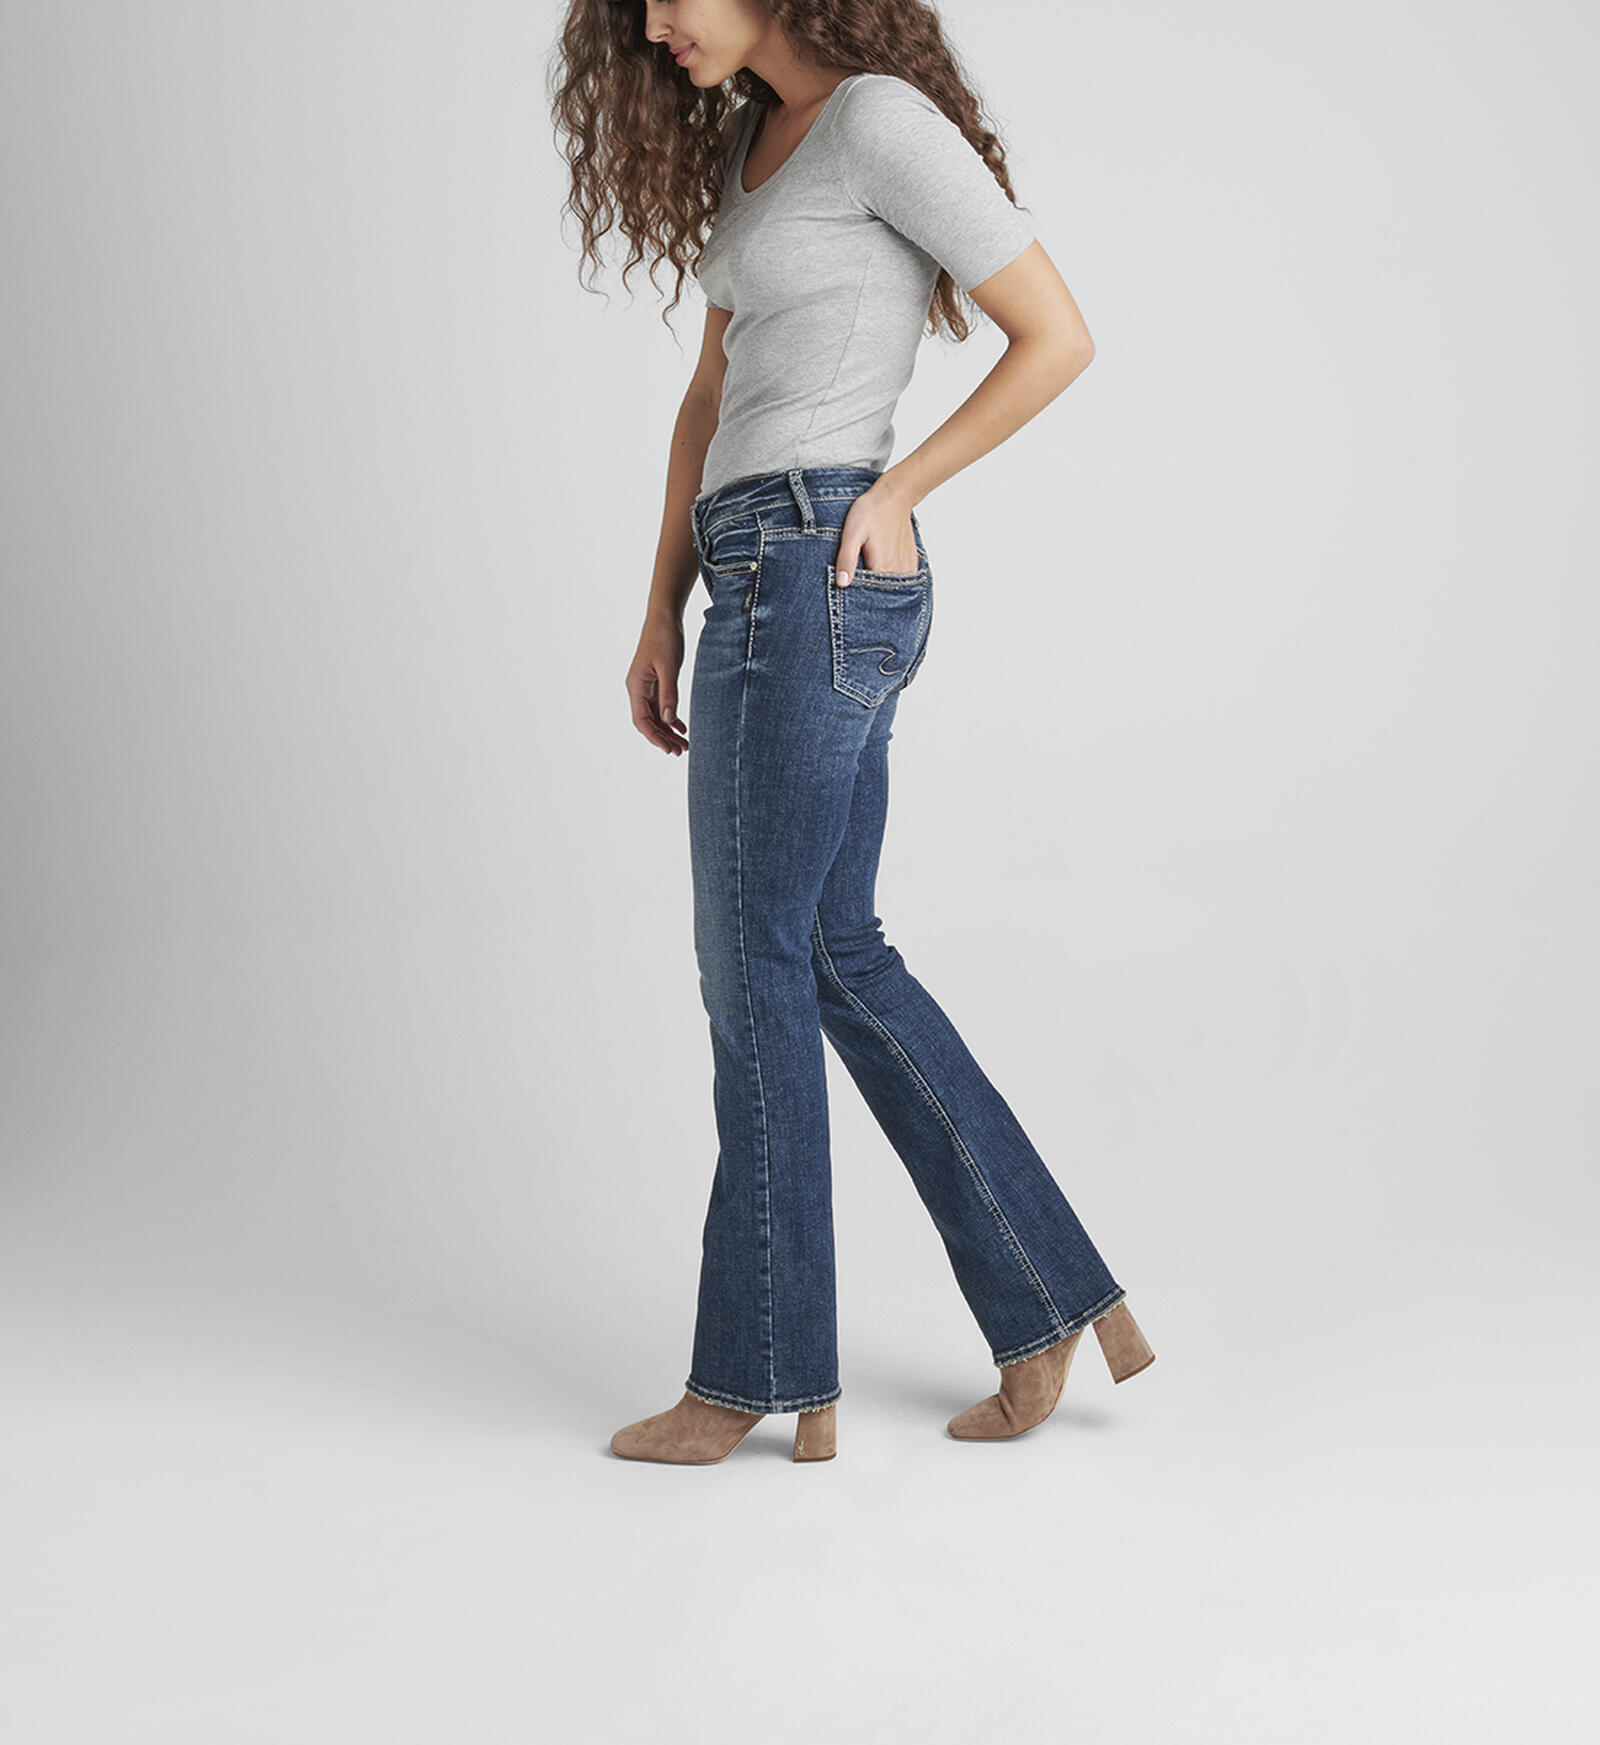 filosofie Sporten regeling Buy Britt Low Rise Slim Bootcut Jeans for USD 88.00 | Silver Jeans US New